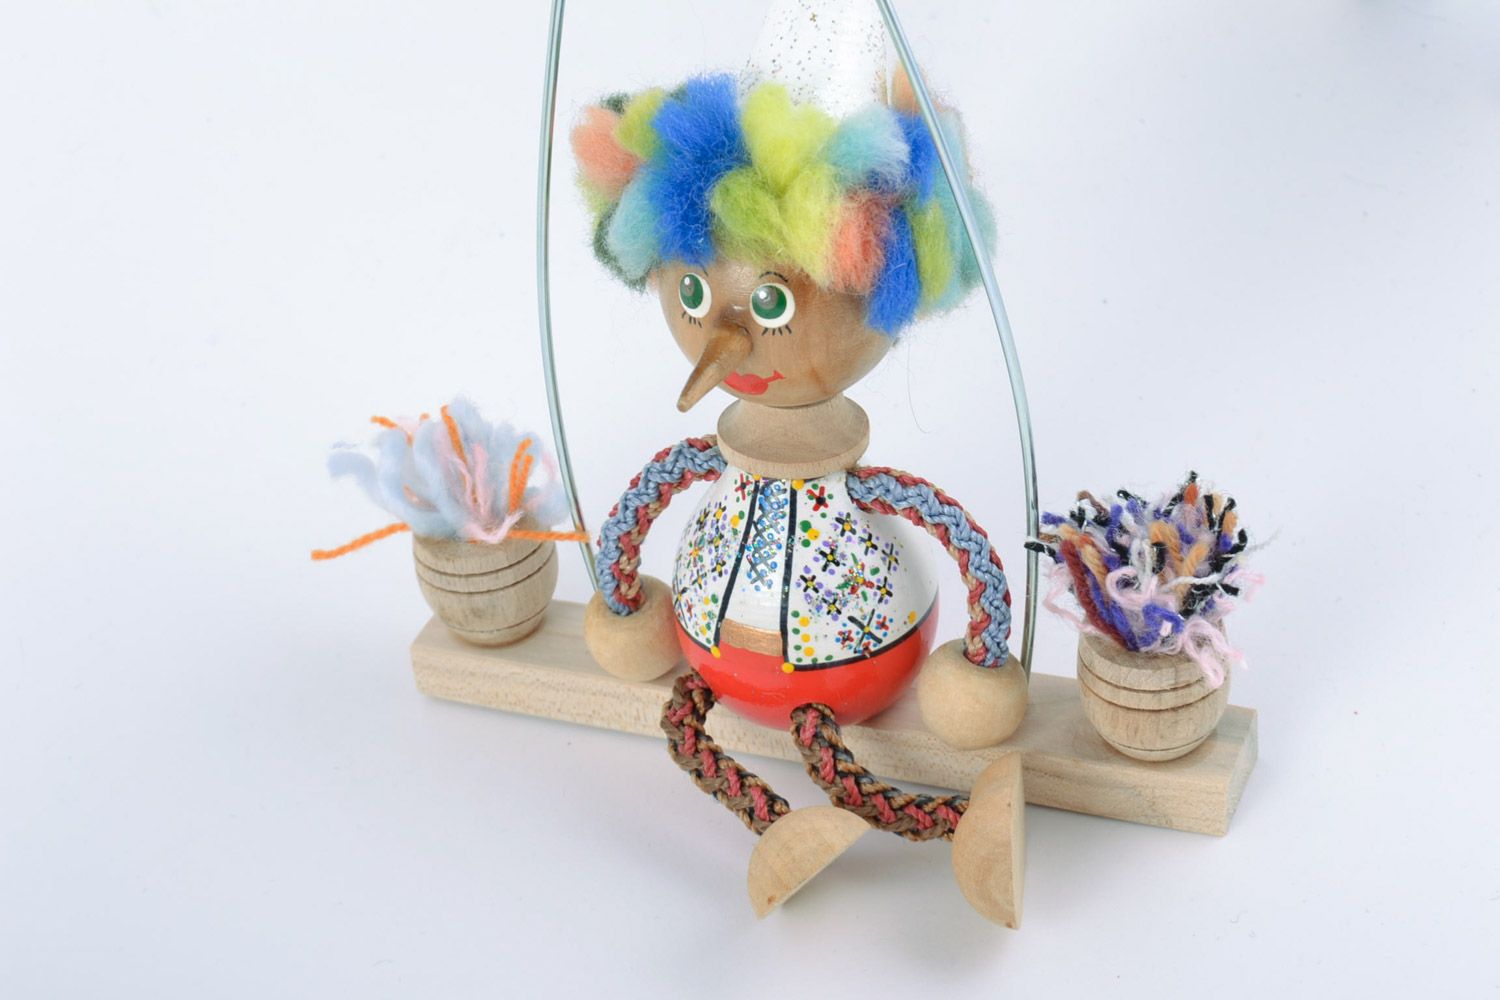 Designer Holz Spielzeug Junge mit Schaukel und Bemalung künstlerische Handarbeit foto 4